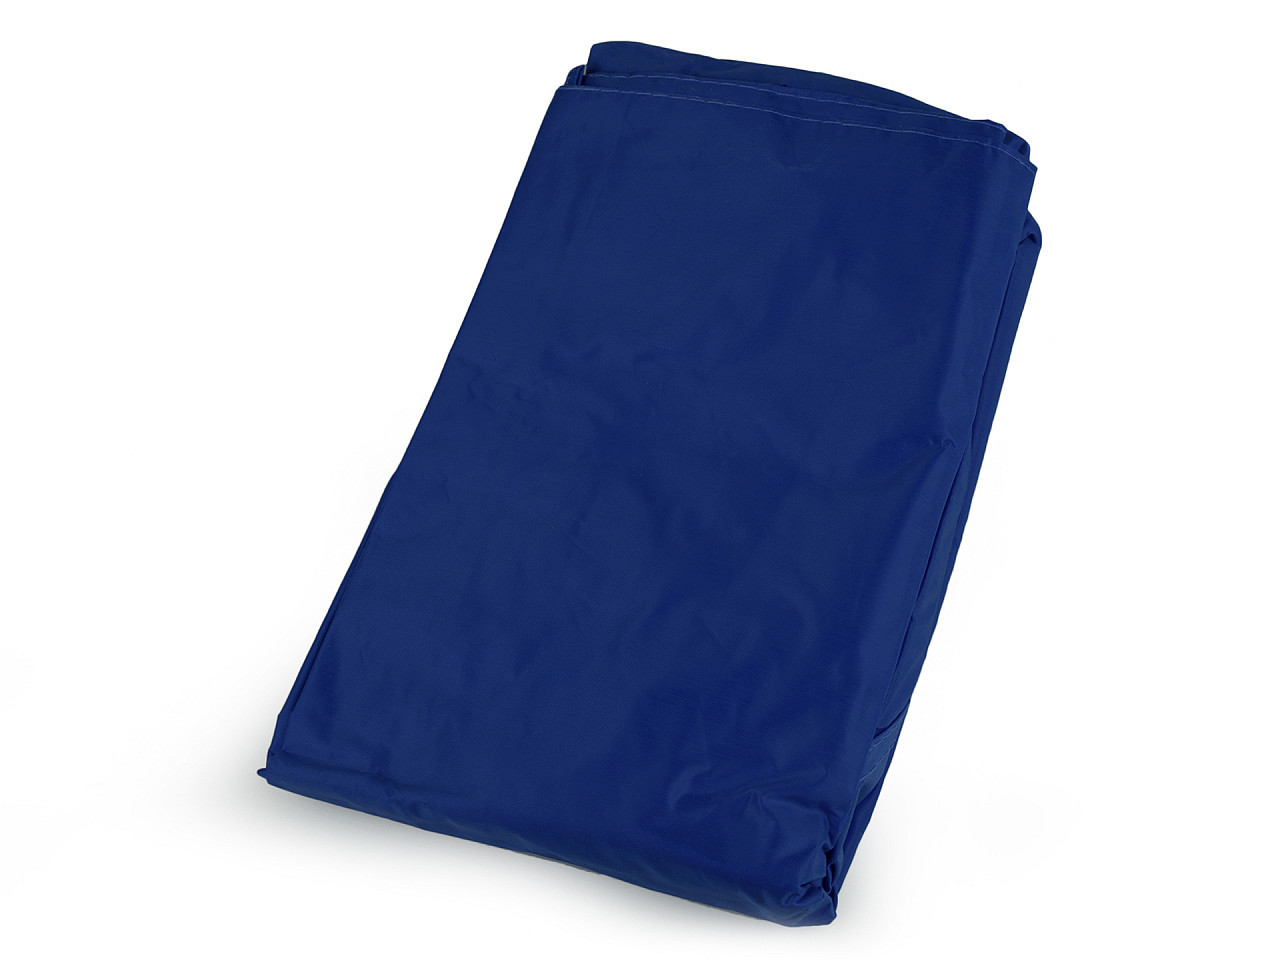 Dětská pláštěnka jednobarevná, barva 20 (vel. 164) modrá safírová